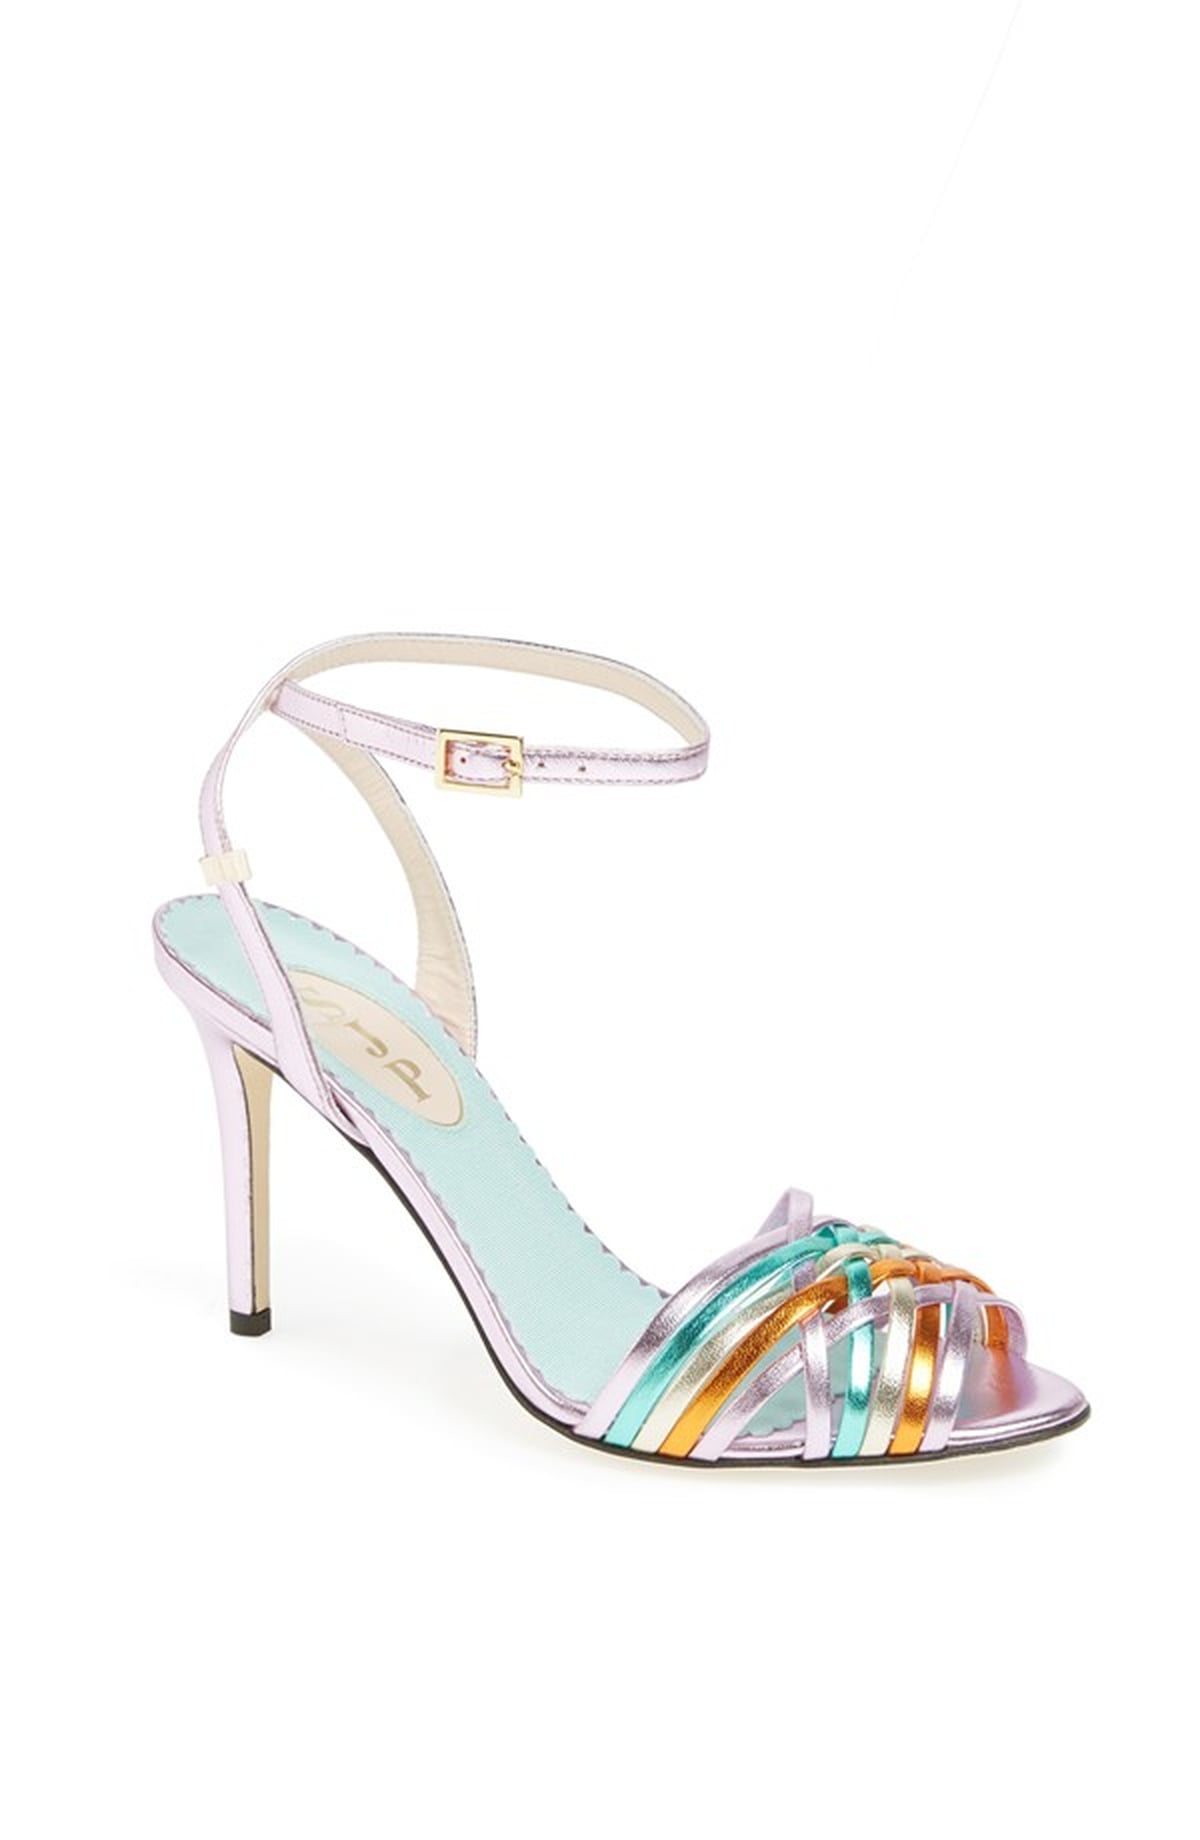 Sarah Jessica Parker Shoe Collection For Nordstrom | POPSUGAR Fashion